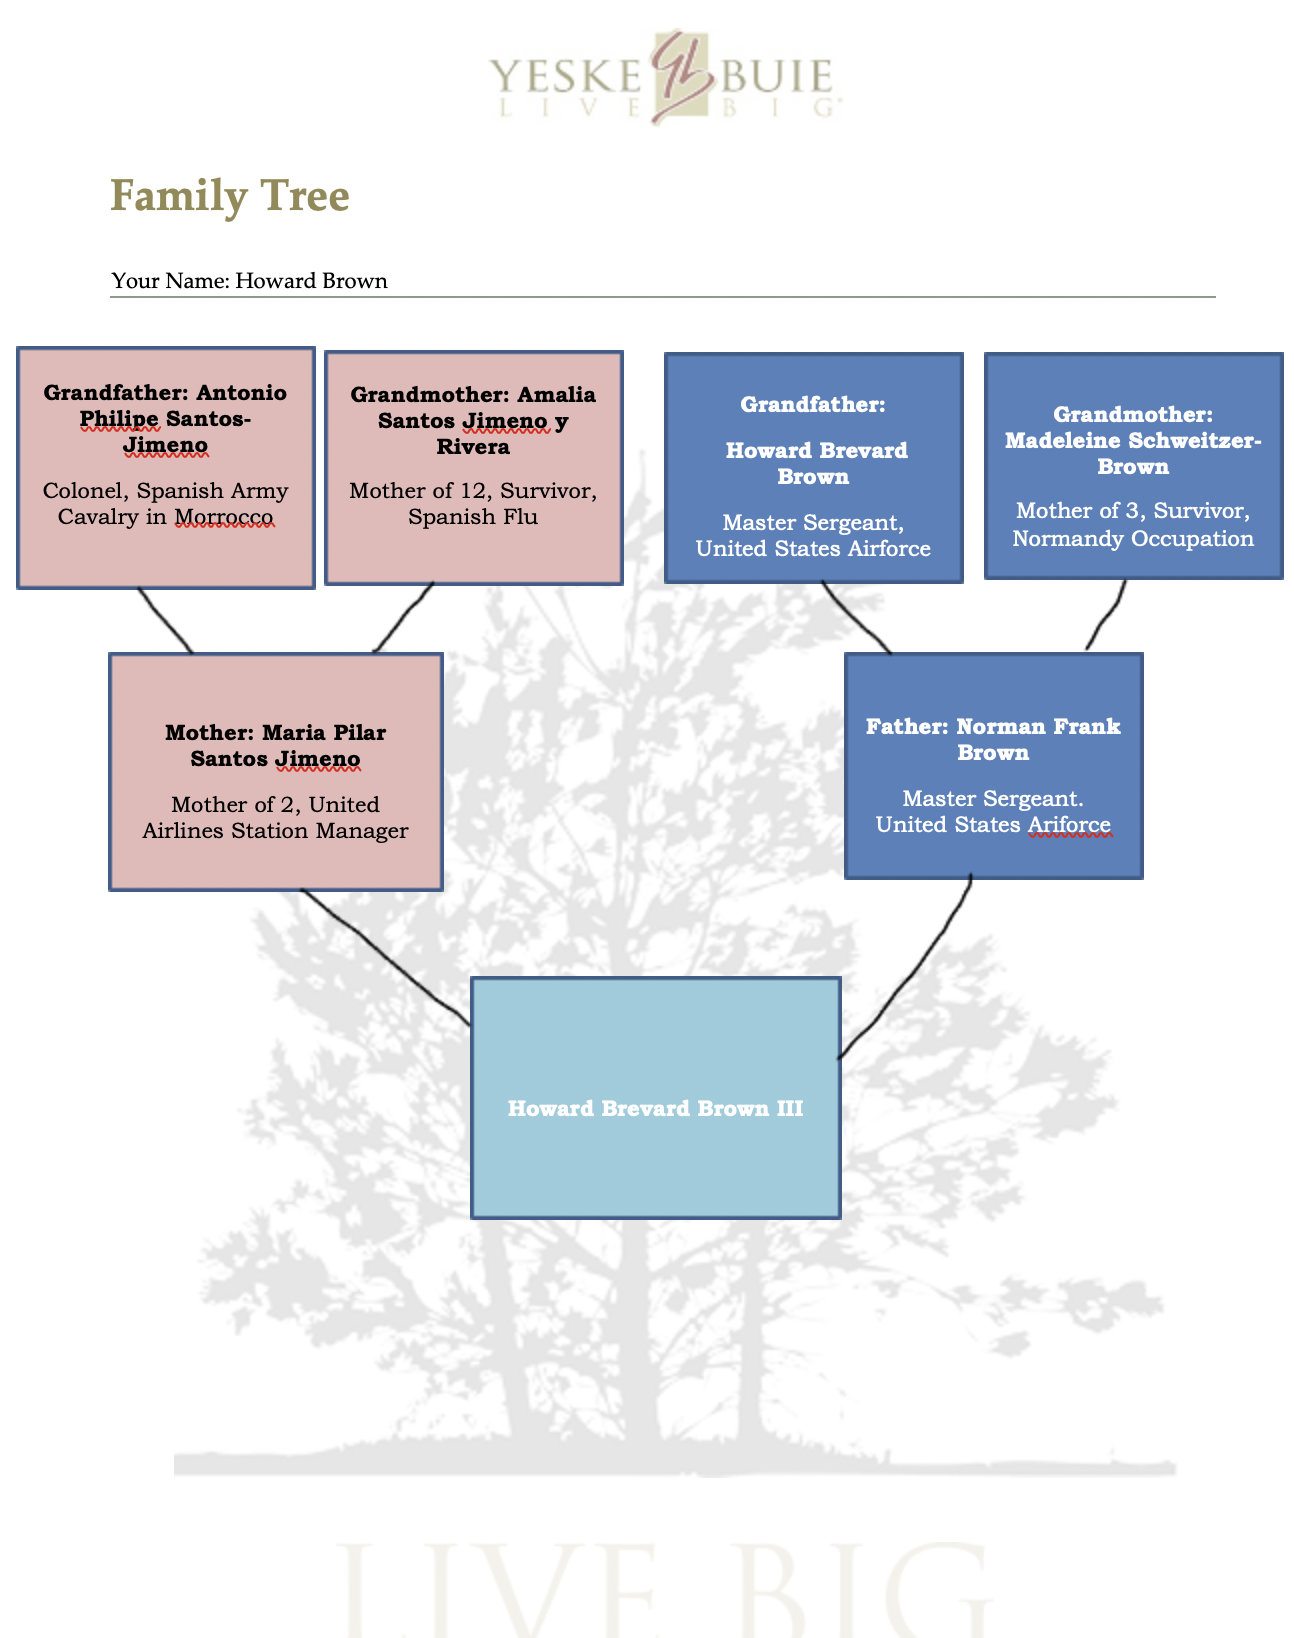 Climbing the Family Tree